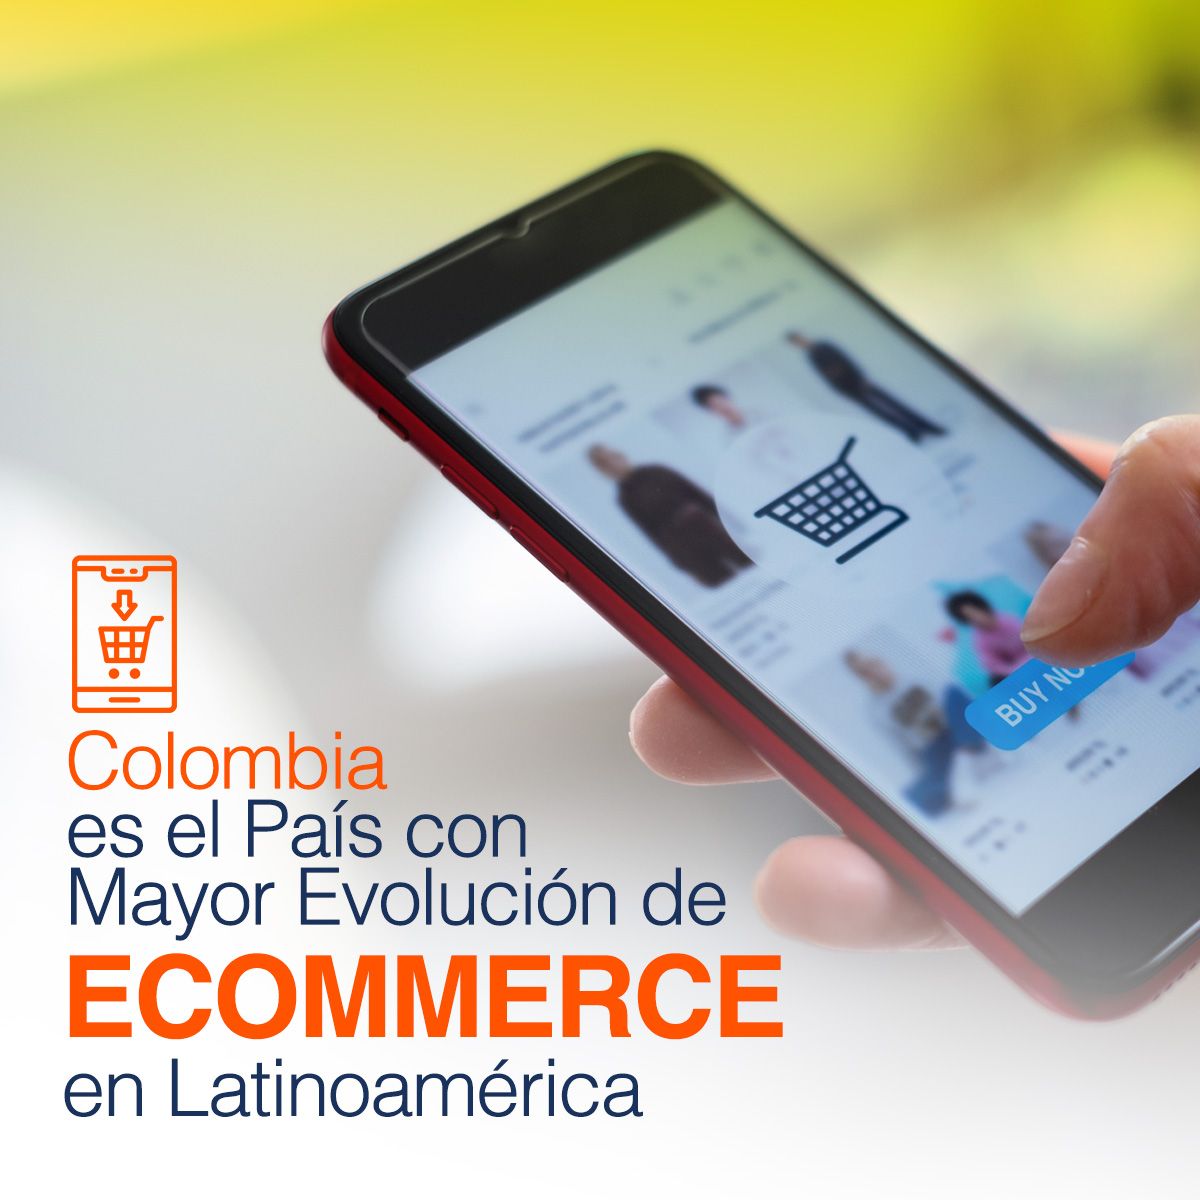 Colombia es el País con Mayor Evolución de Ecommerce en Latinoamérica